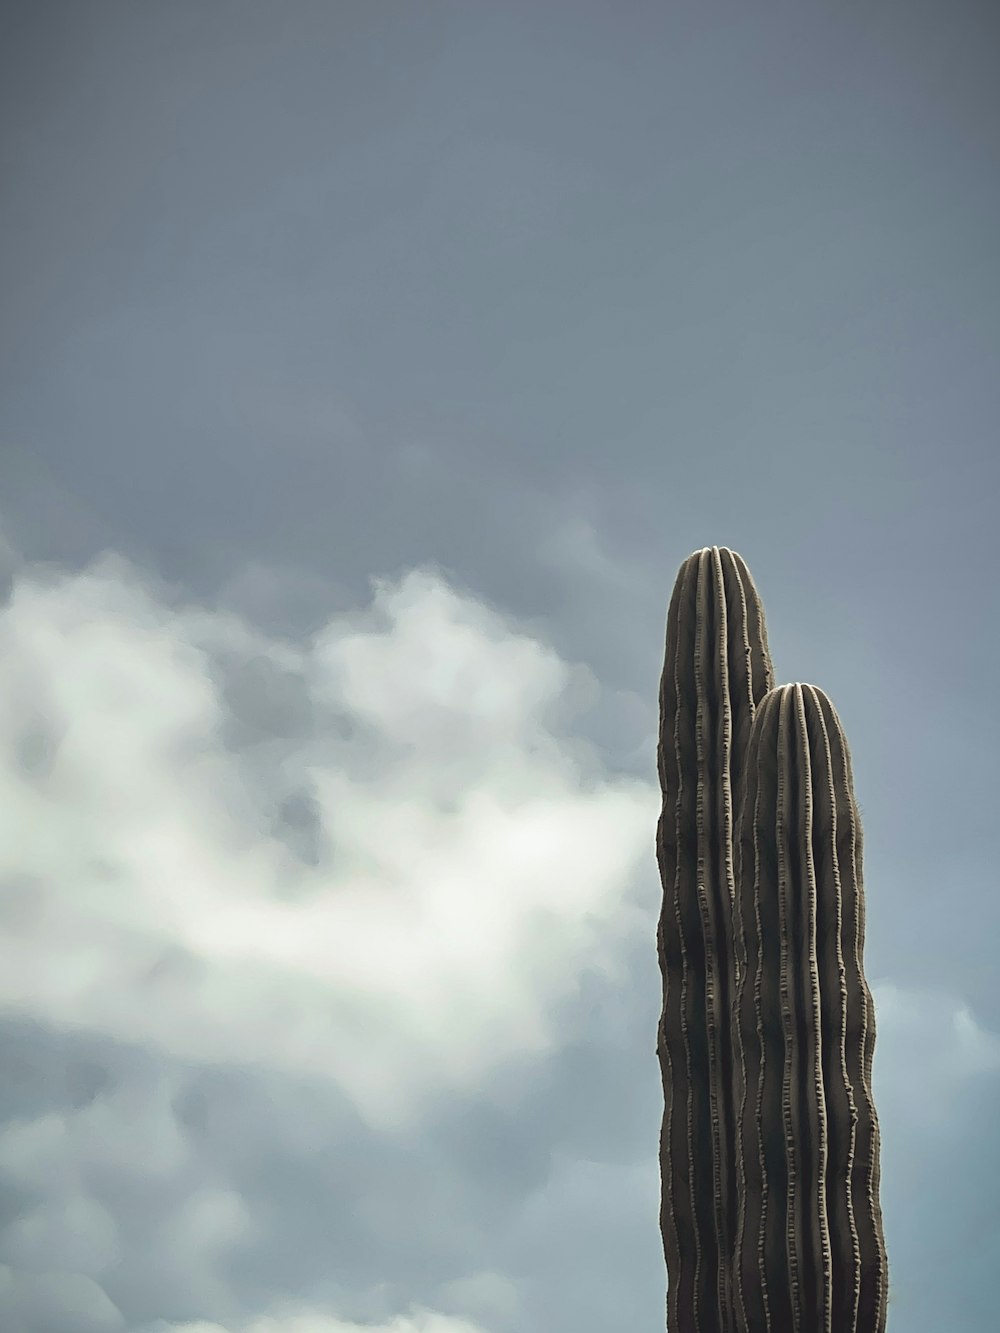 a cactus in a blue cloudy sky